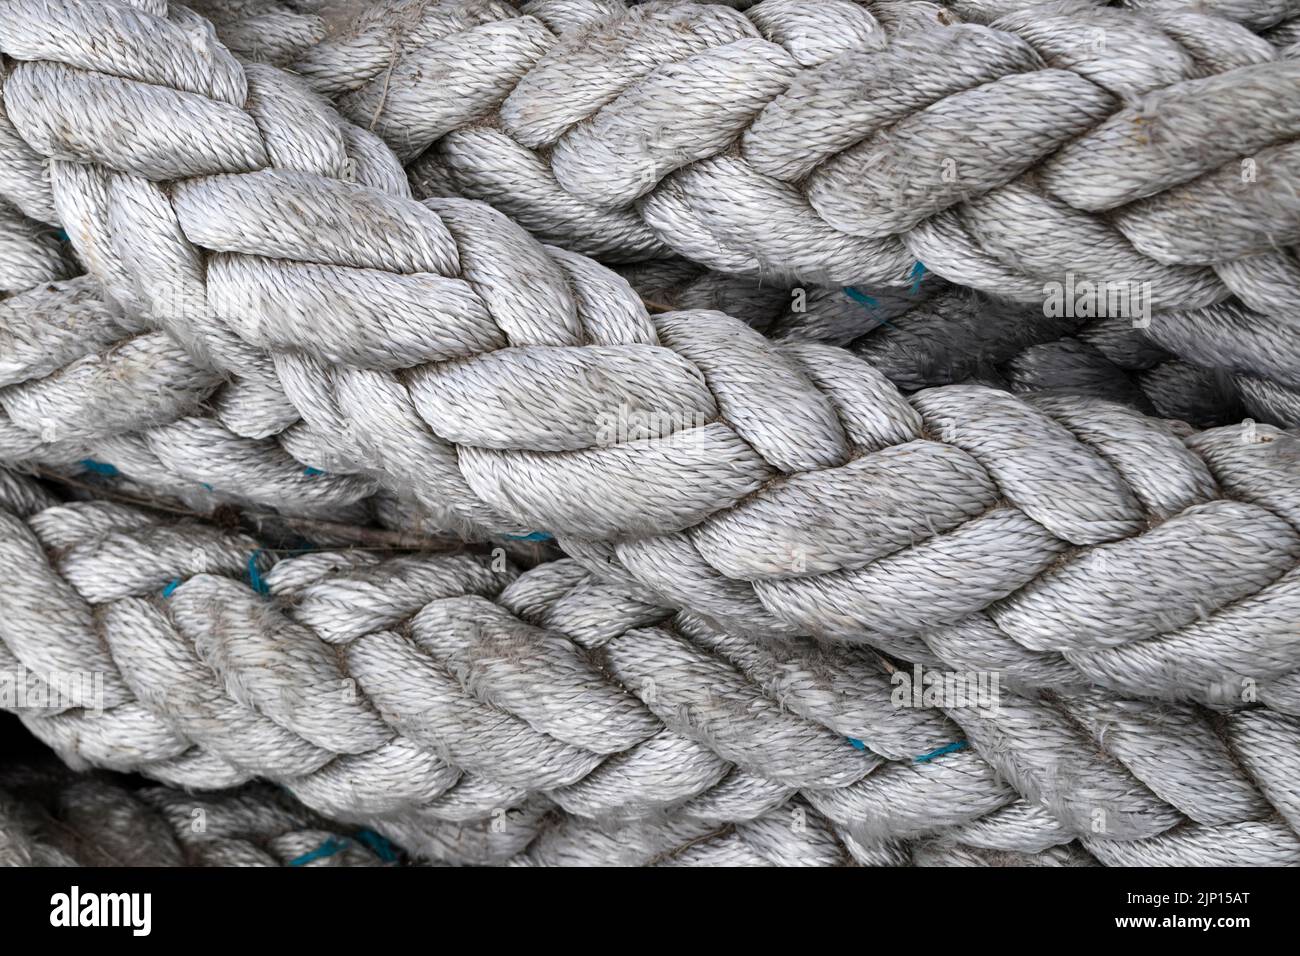 Bobinas de cuerda de servicio pesado en plataformas utilizadas en la industria marina, Northumberland, Reino Unido Foto de stock